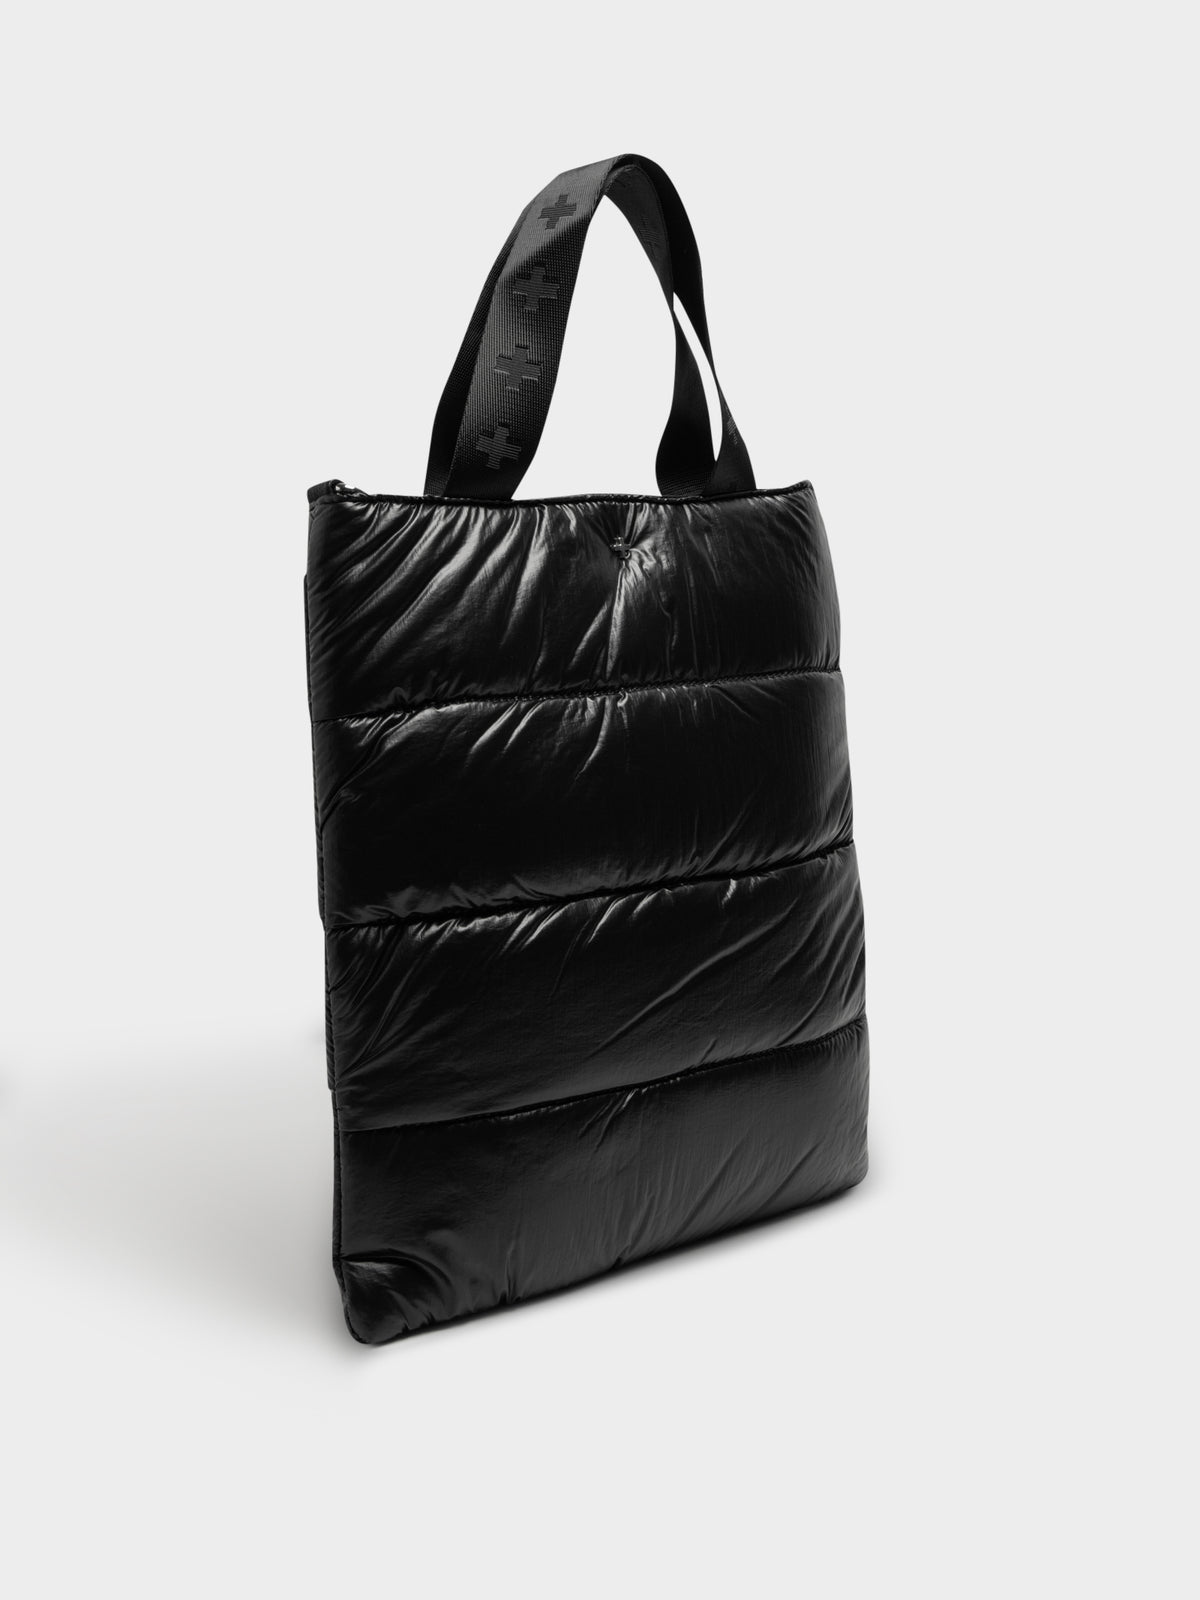 Zephyr Bag in Black